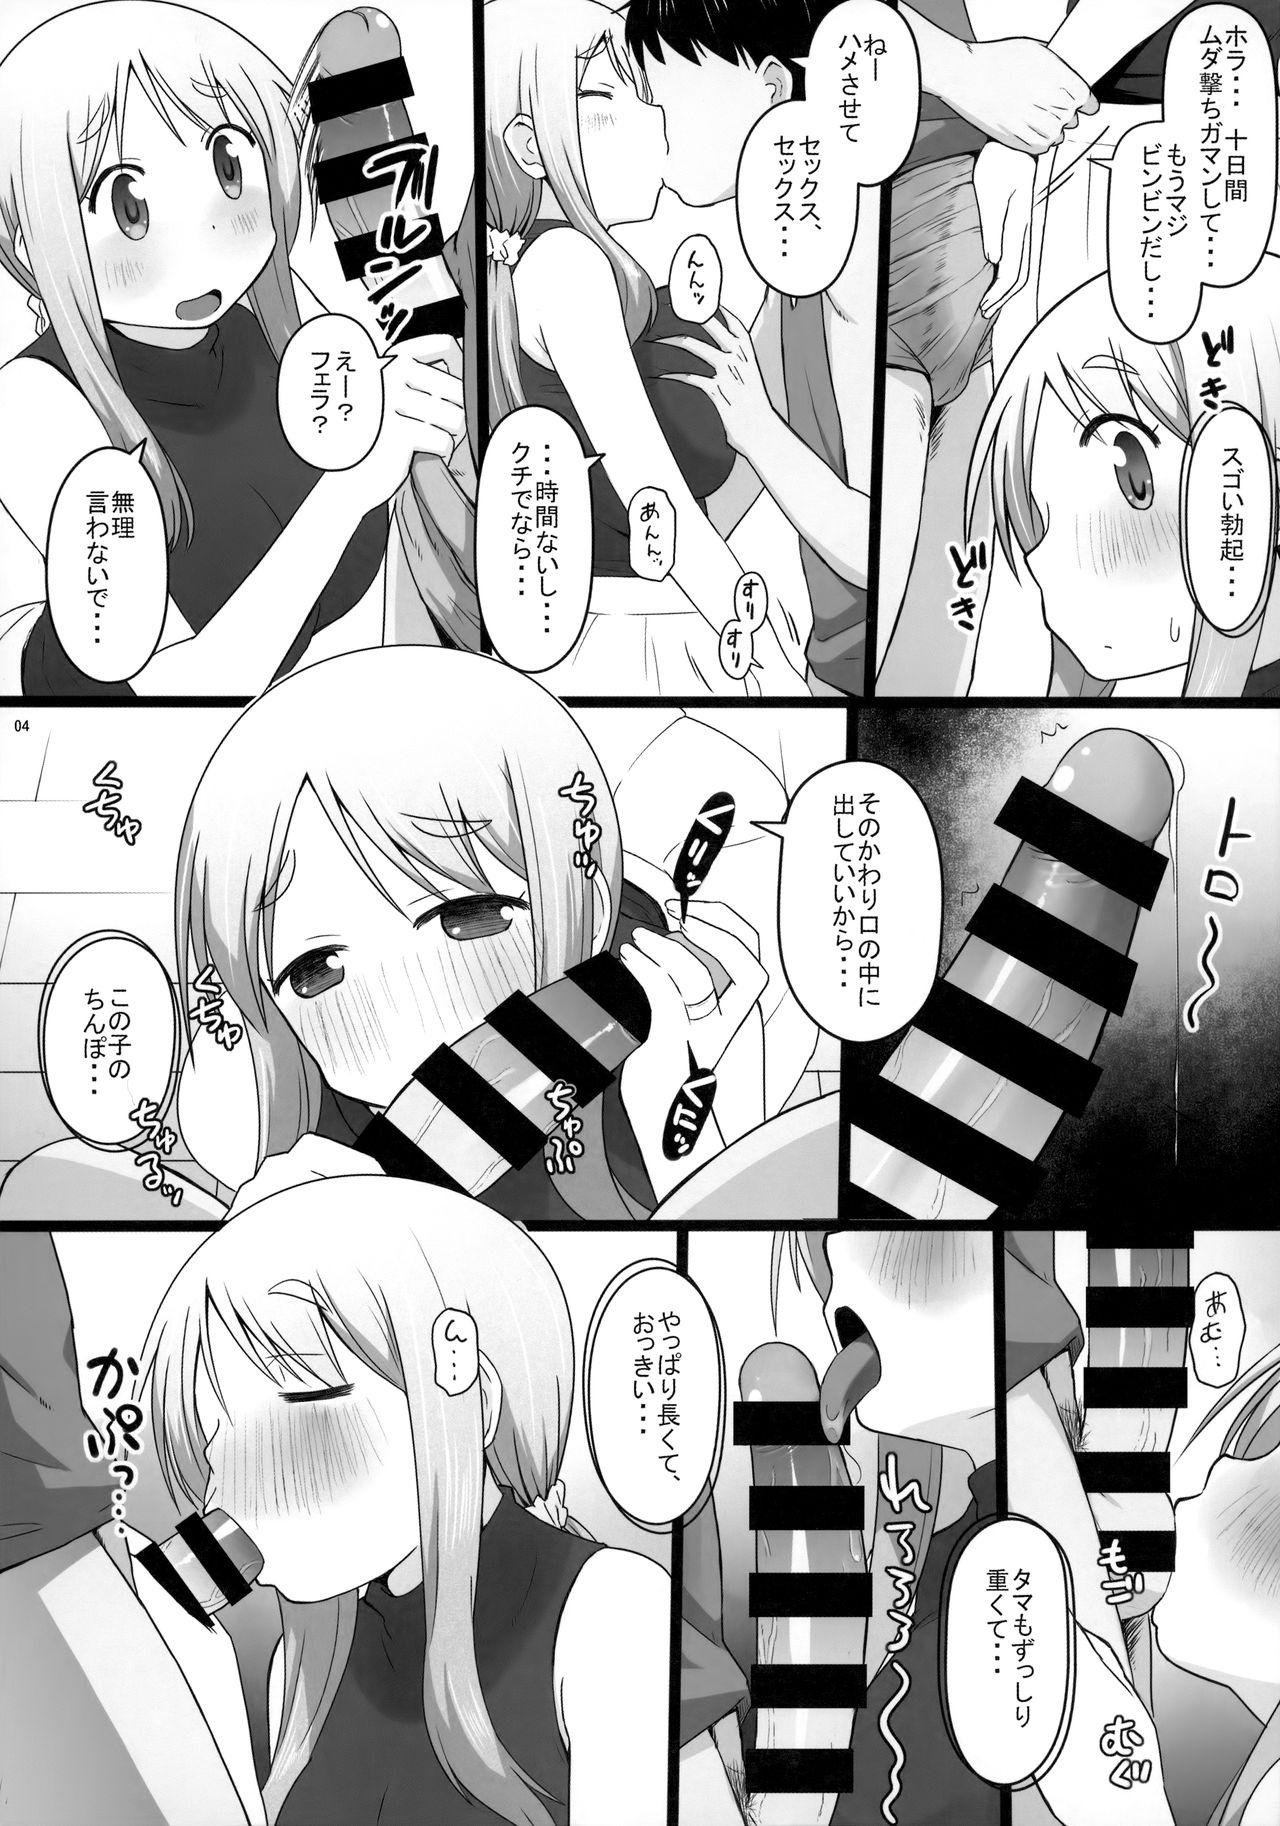 Taboo Angel's stroke 129 DSY2 bakku daisuki! Giri no musuko to beddo ni shizumu gosai haha Yoriko-chan! ! - Yuyushiki Gay Kissing - Page 5